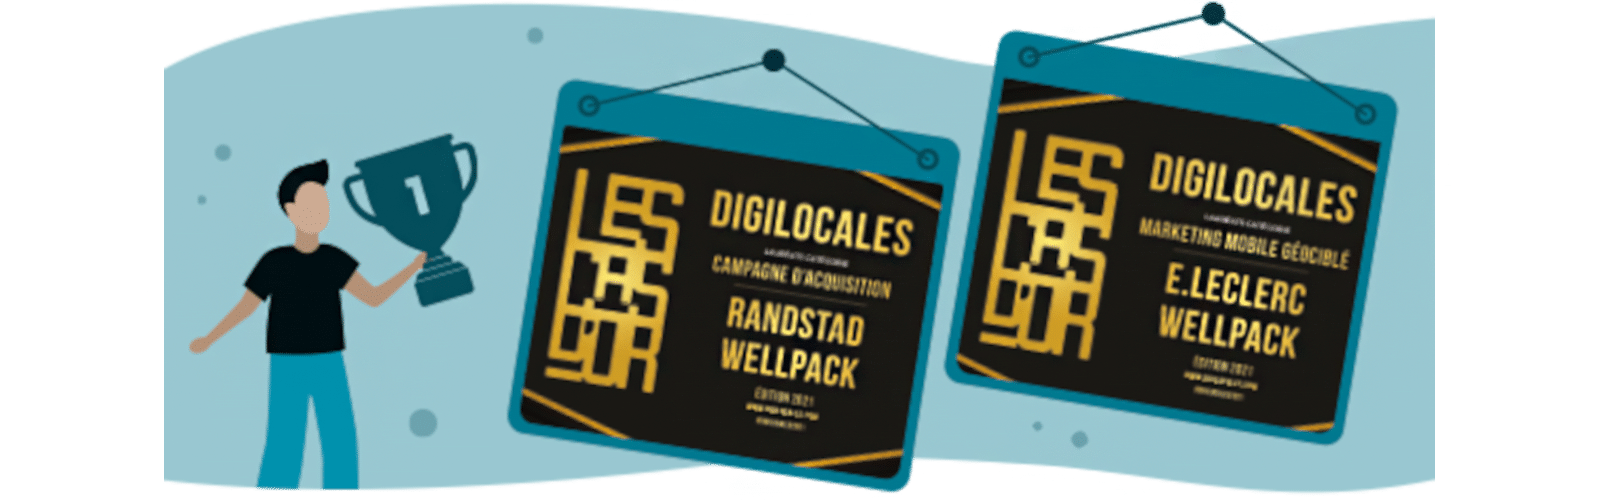 Pictogramme des trophées remporté par Wellpack aux Digilocales